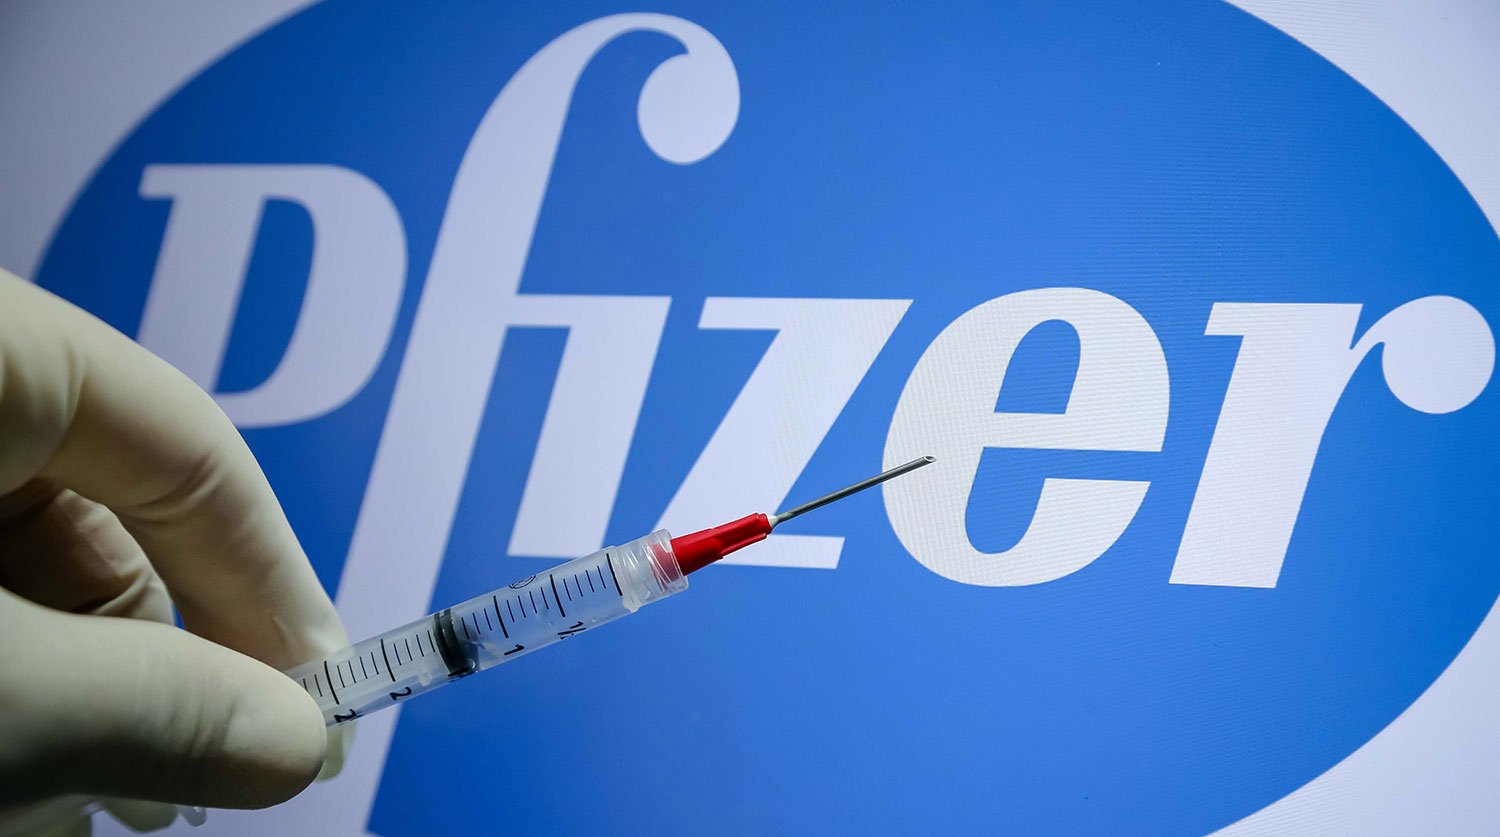 Pfizer պատվաստանյութի արդյունավետությունը հնդկական շտամի դեմ նվազել է մինչև 60-80%